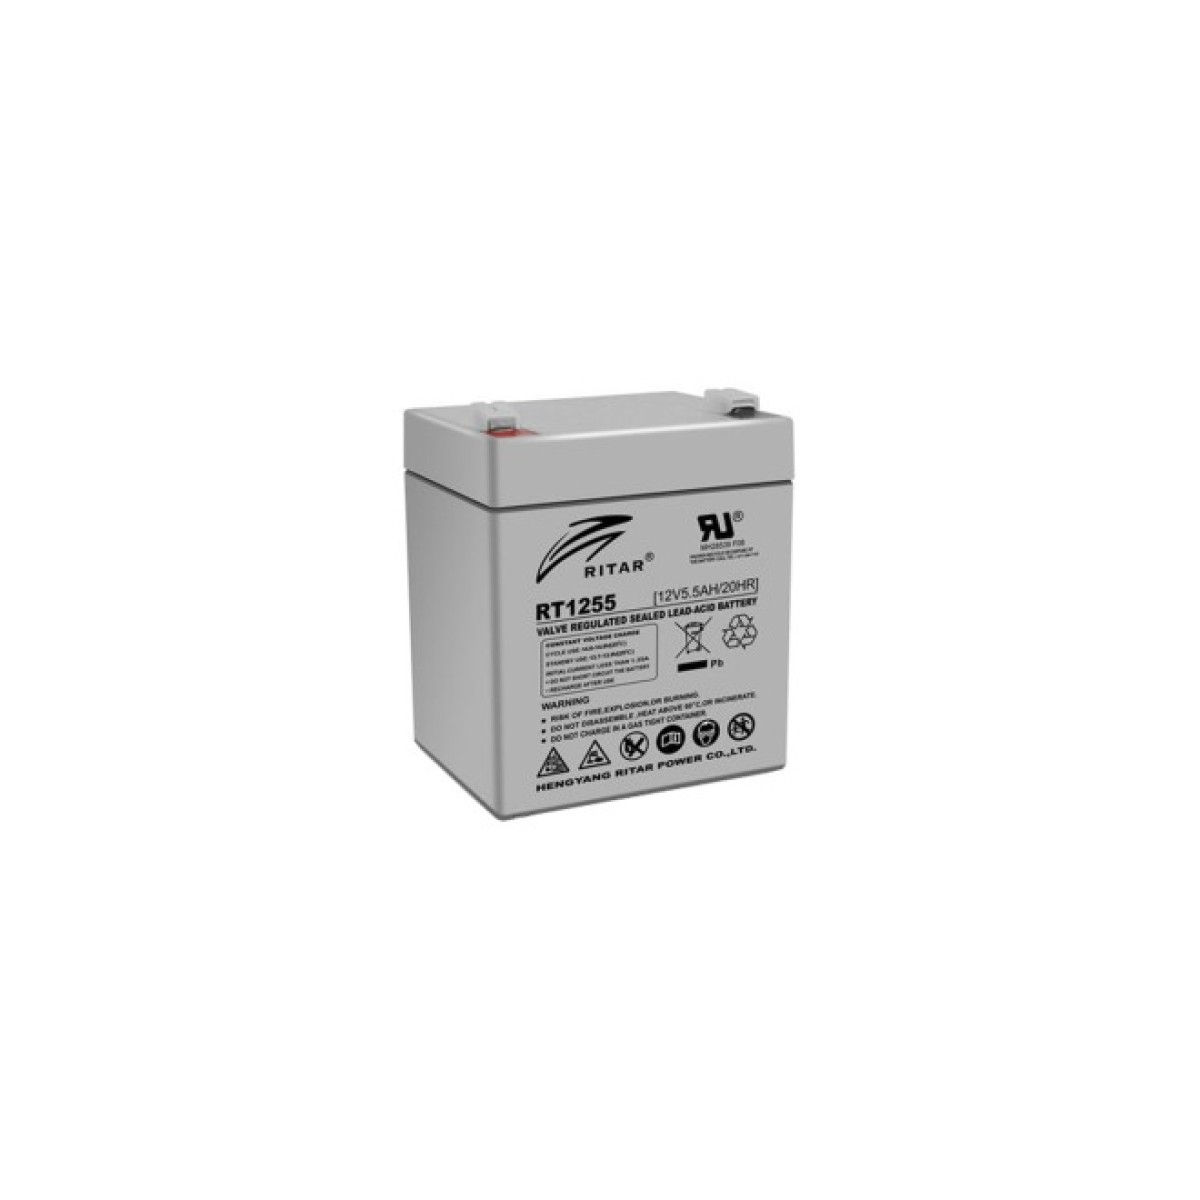 Батарея до ДБЖ Ritar AGM RT1255, 12V-5.5Ah (RT1255) 256_256.jpg